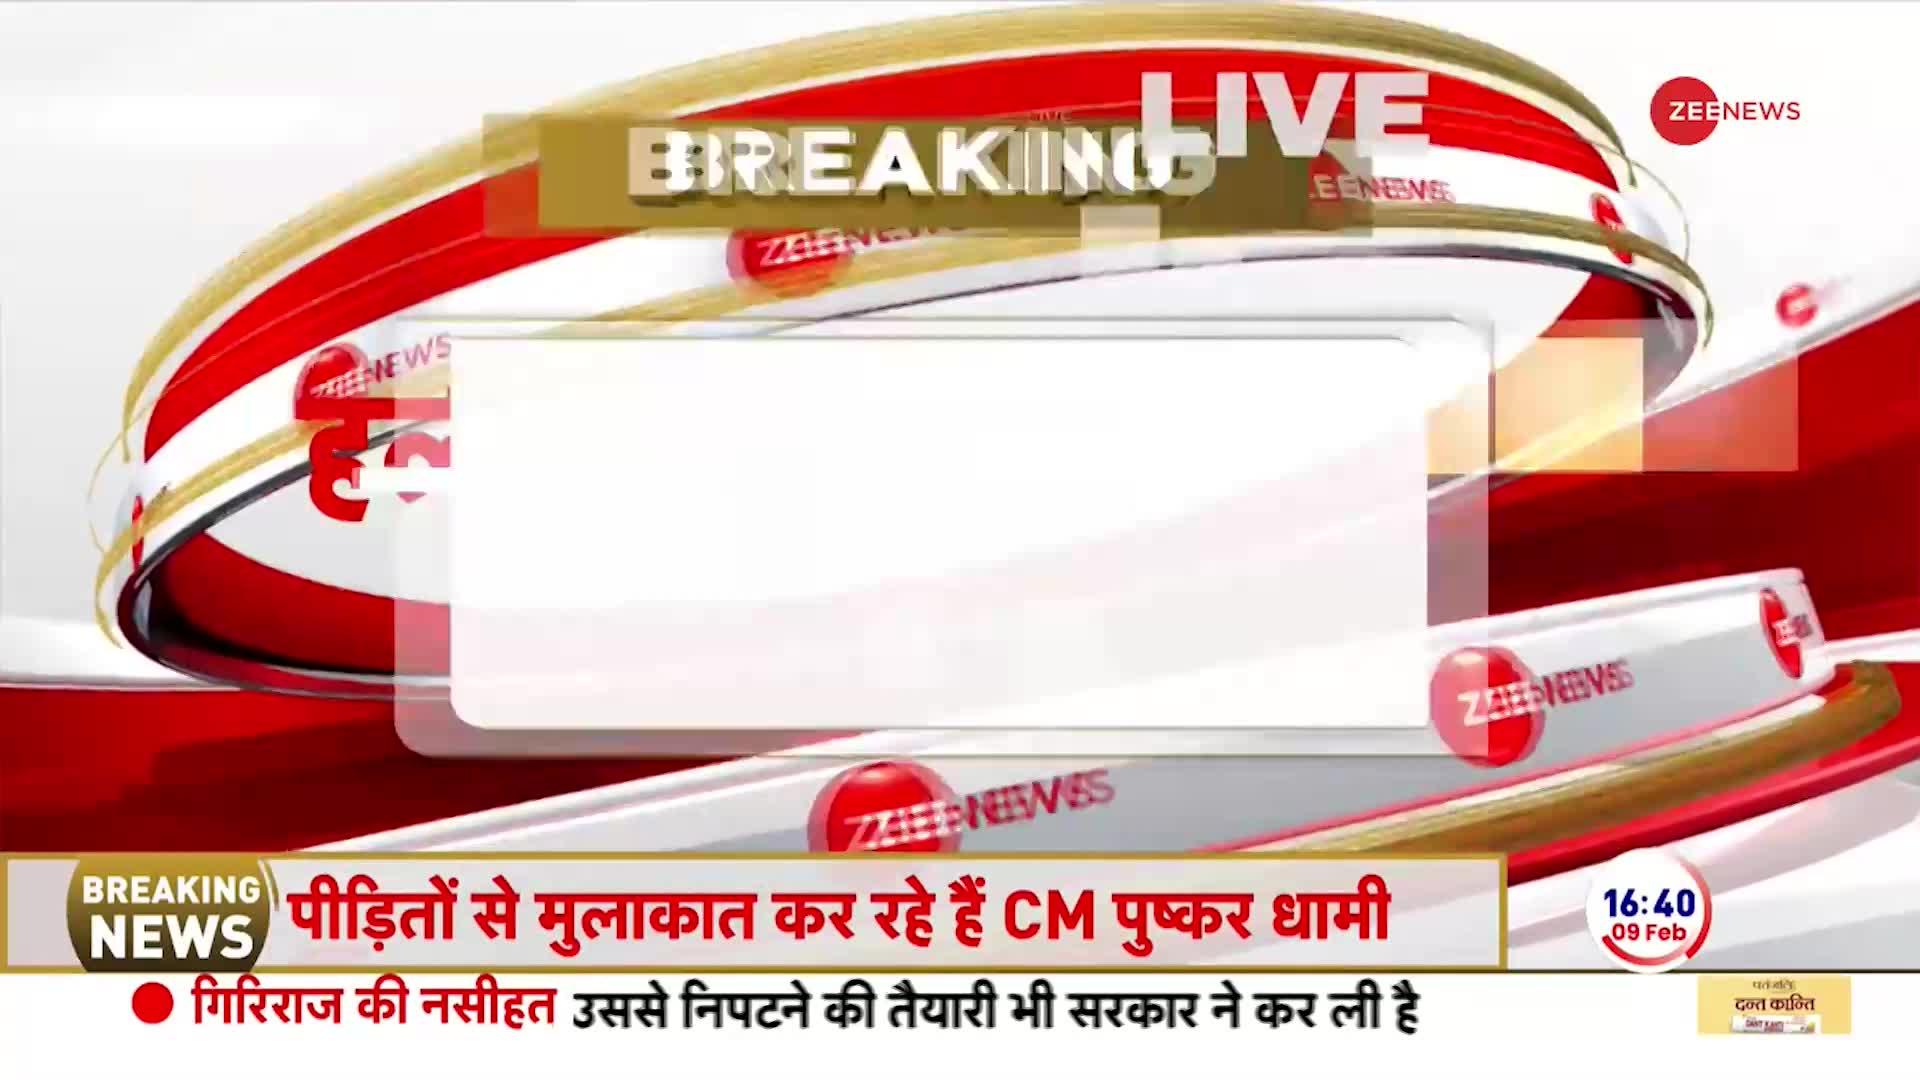 Uttarakhand News: हल्द्वानी के उत्तराखंड पहुंचे CM धामी